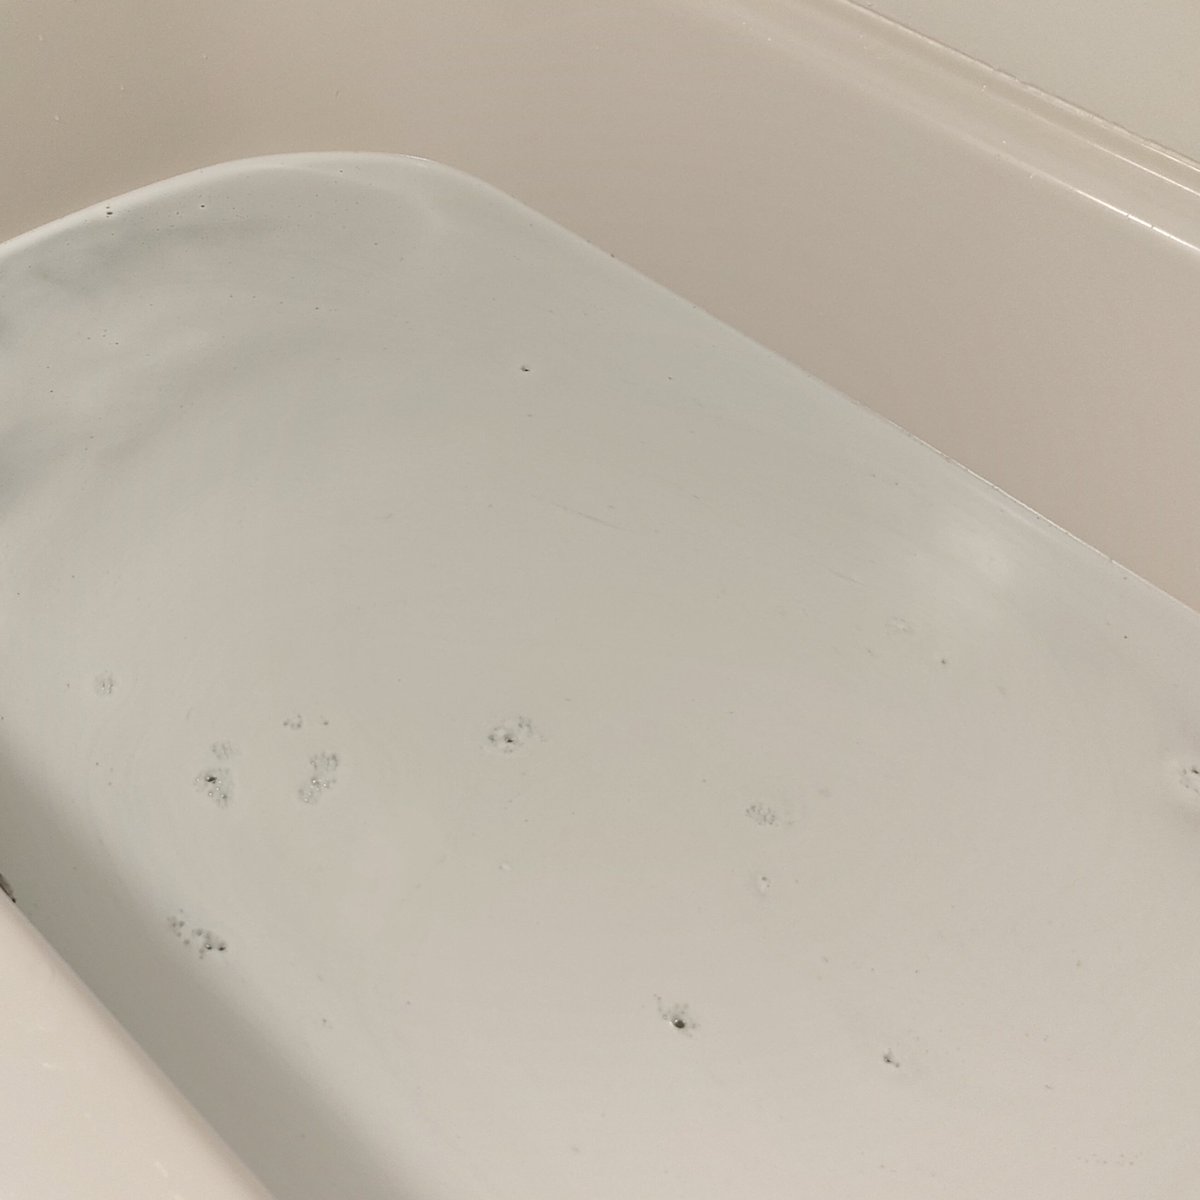 コエタスのモニターキャンペーンでもらったバスリフレ 風呂釜クリーナー 1つ穴用 粉タイプです。
1つ穴用の風呂釜用の洗浄剤です。簡単に内部まで綺麗にしてくれます！
#コエタス #PR #ライケミ #ライオンケミカル #風呂釜クリーナー #バスリフレ